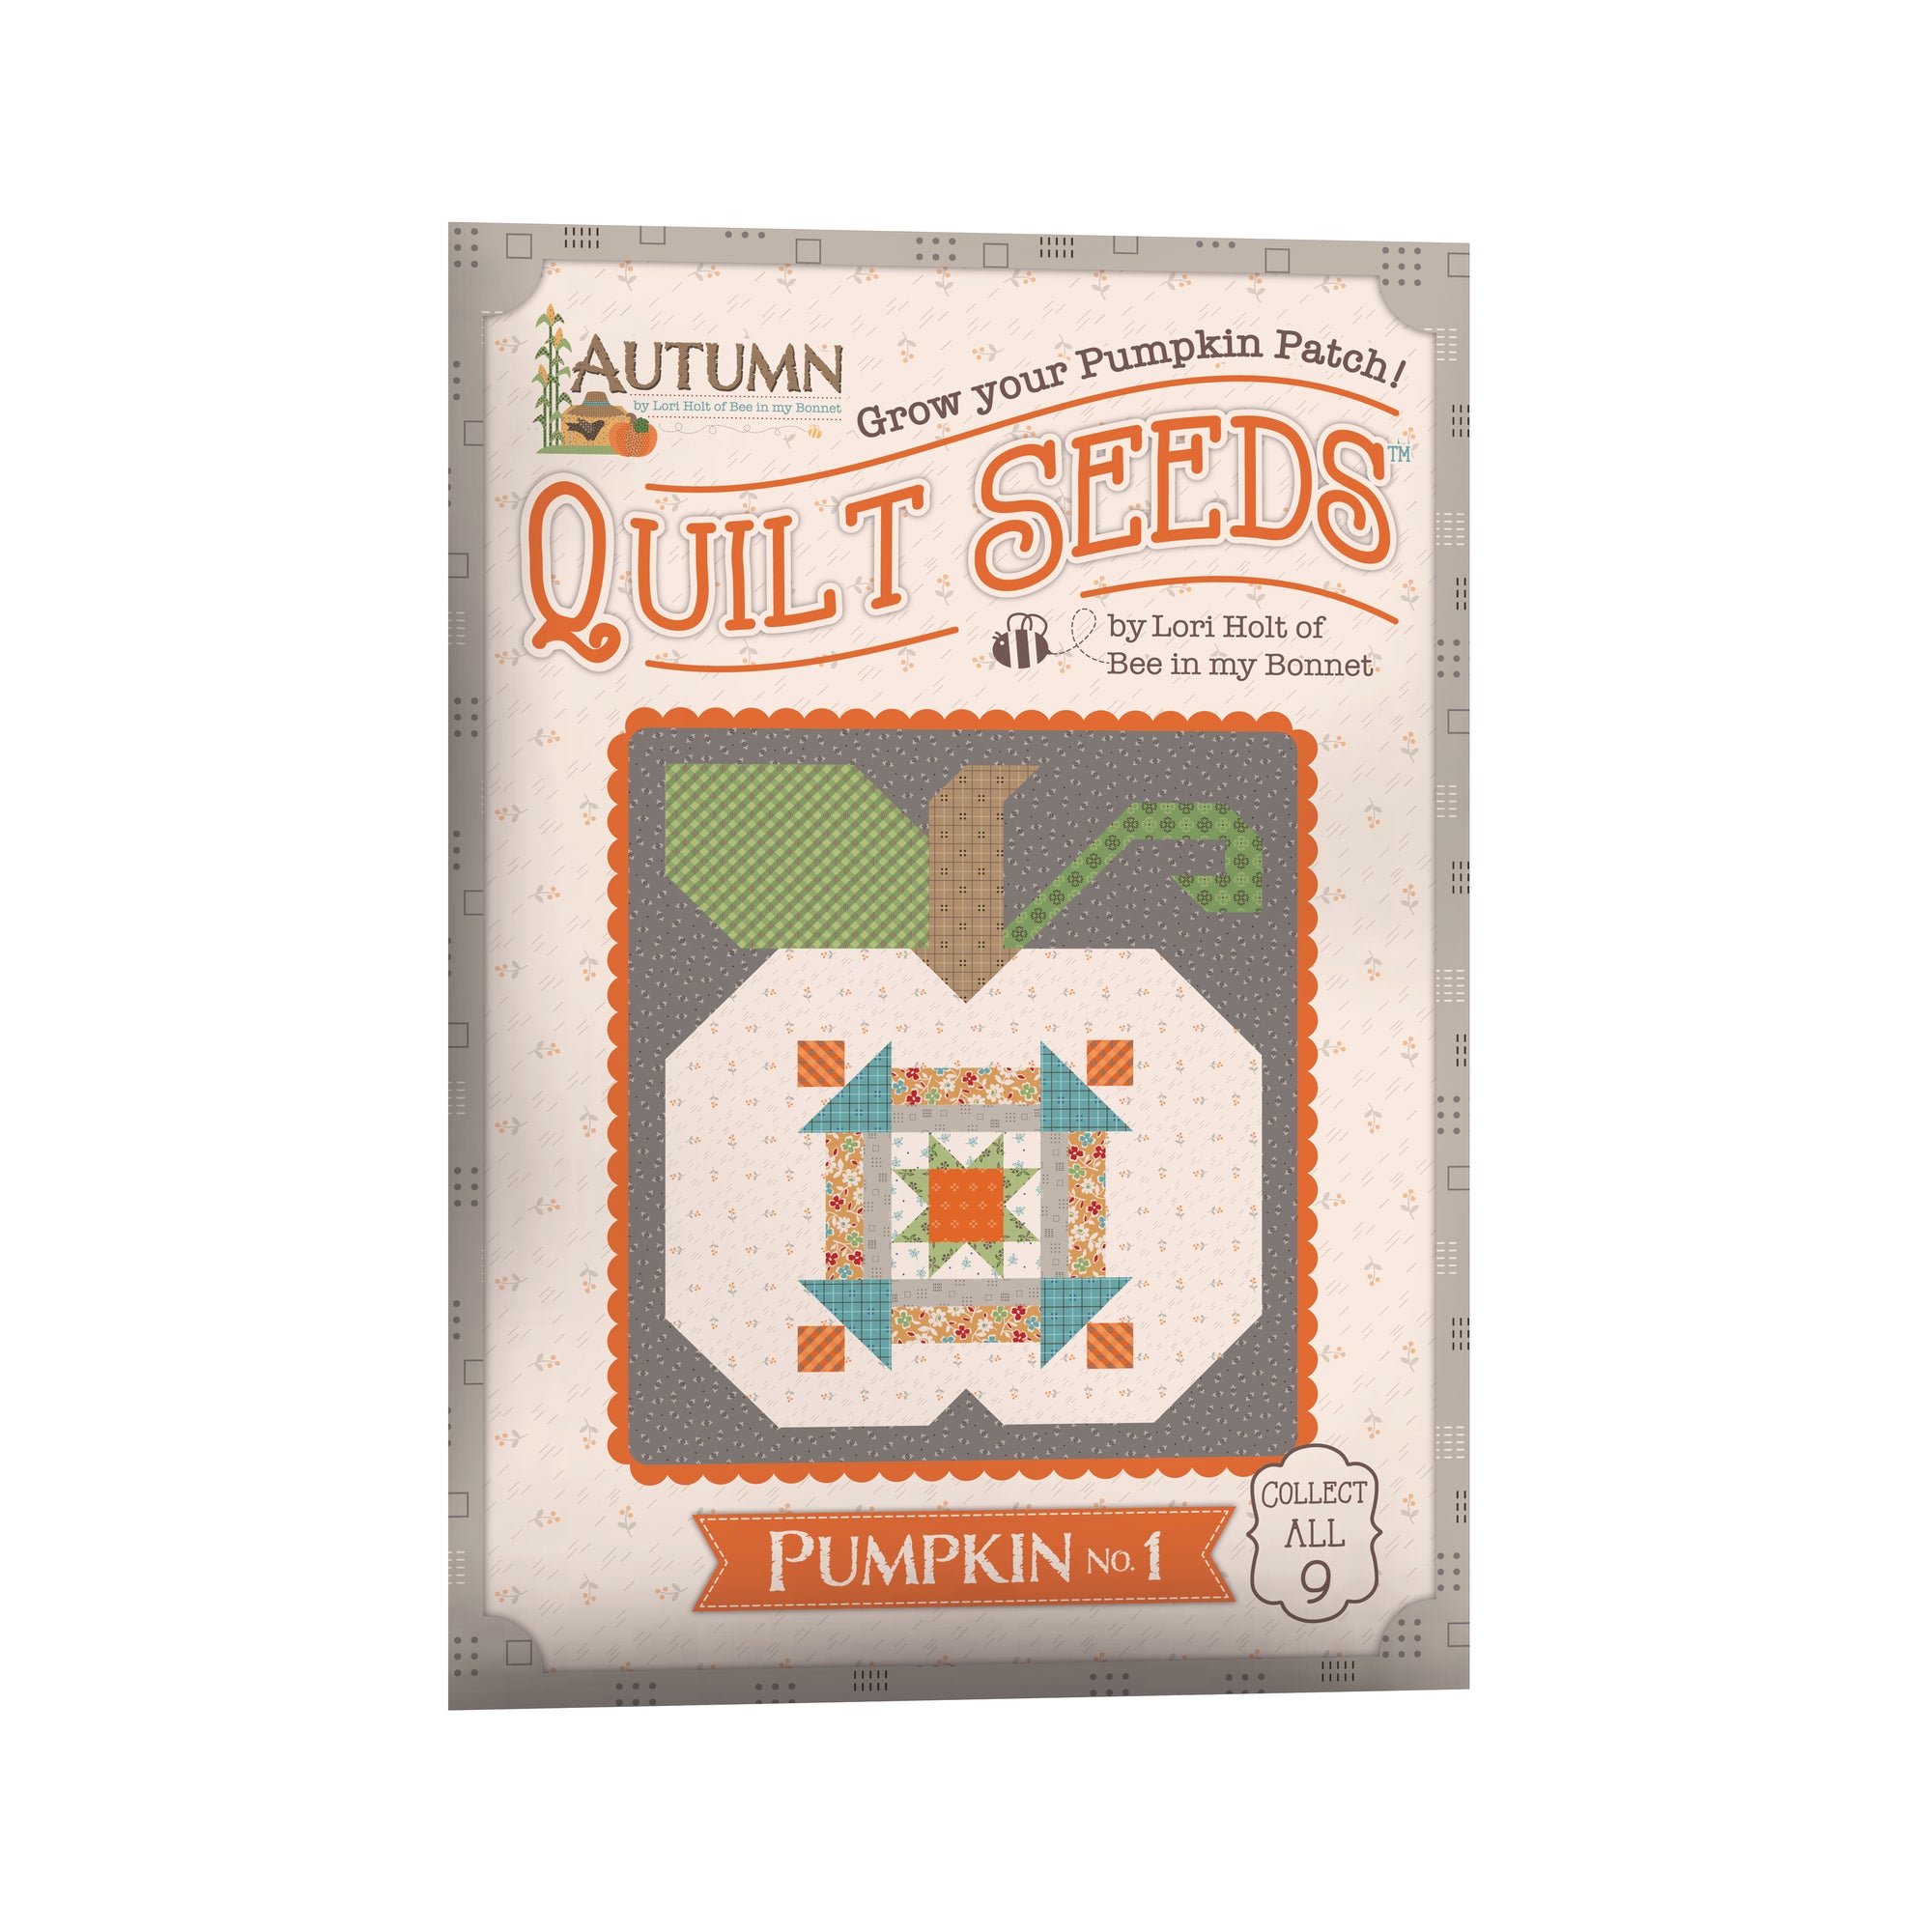 Lori Holt Autumn Quilt Seeds™ Pattern Pumpkin No 1